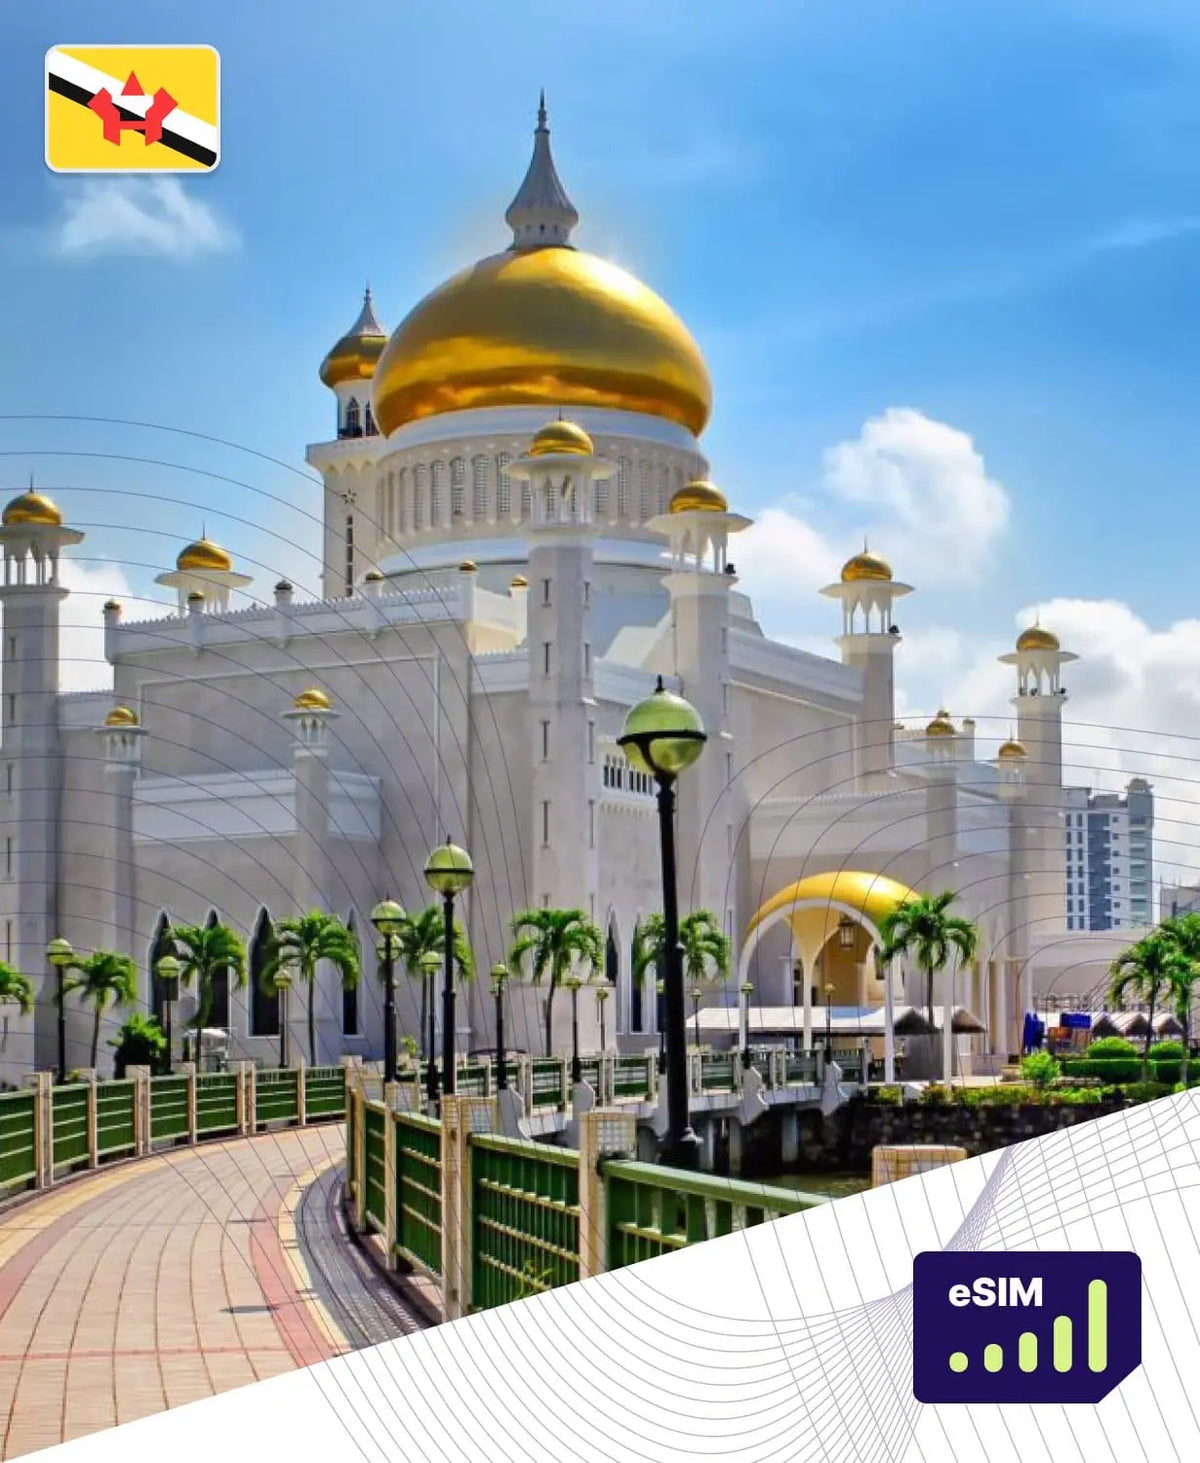 Brunei eSIM Plans - Roamight